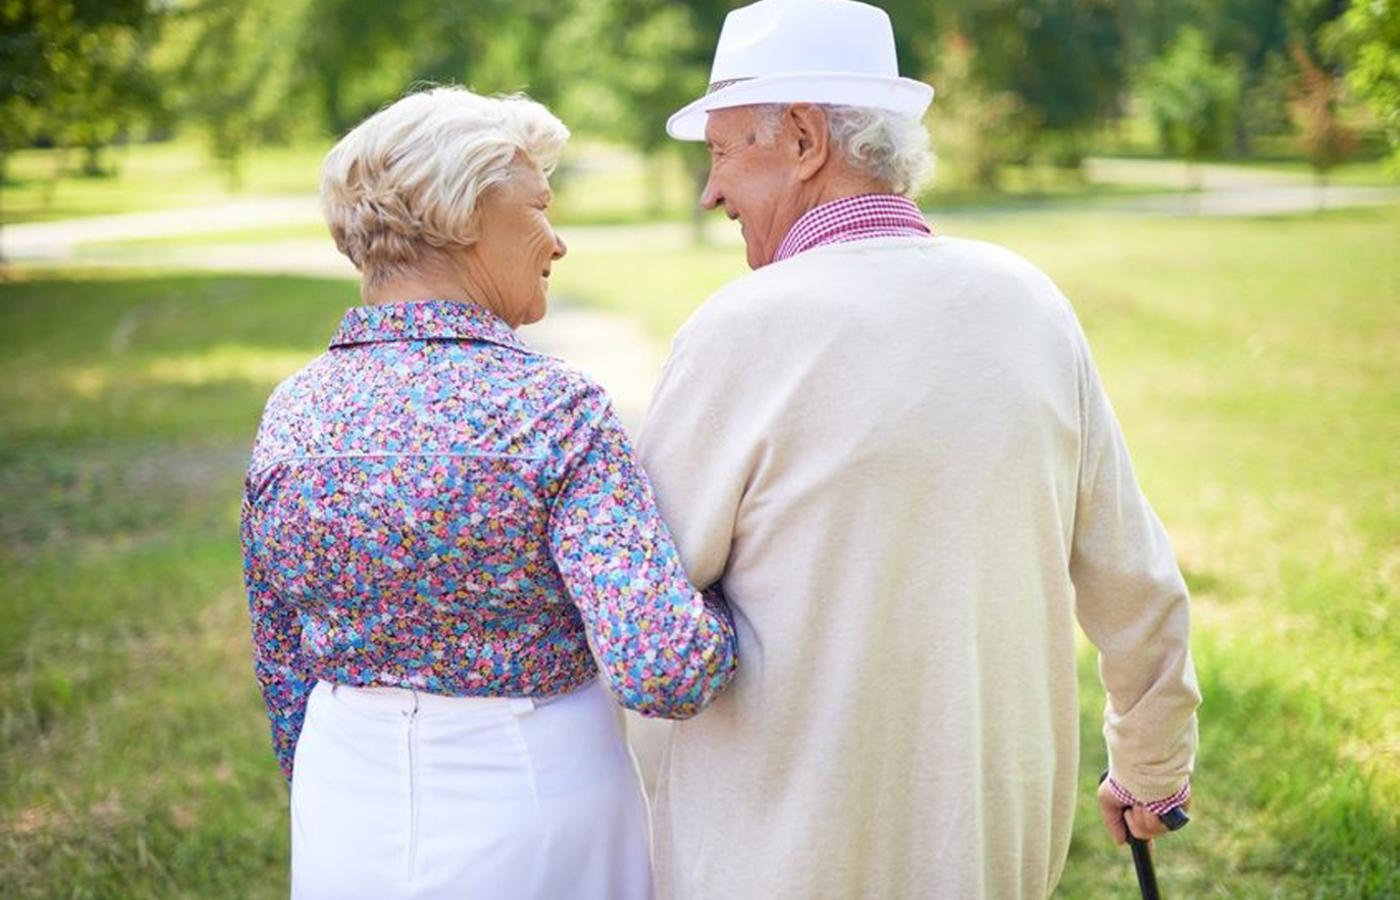 W Polsce ponad milion par dożywa późnej starości we dwoje. Część z nich razem się stąd zbiera.